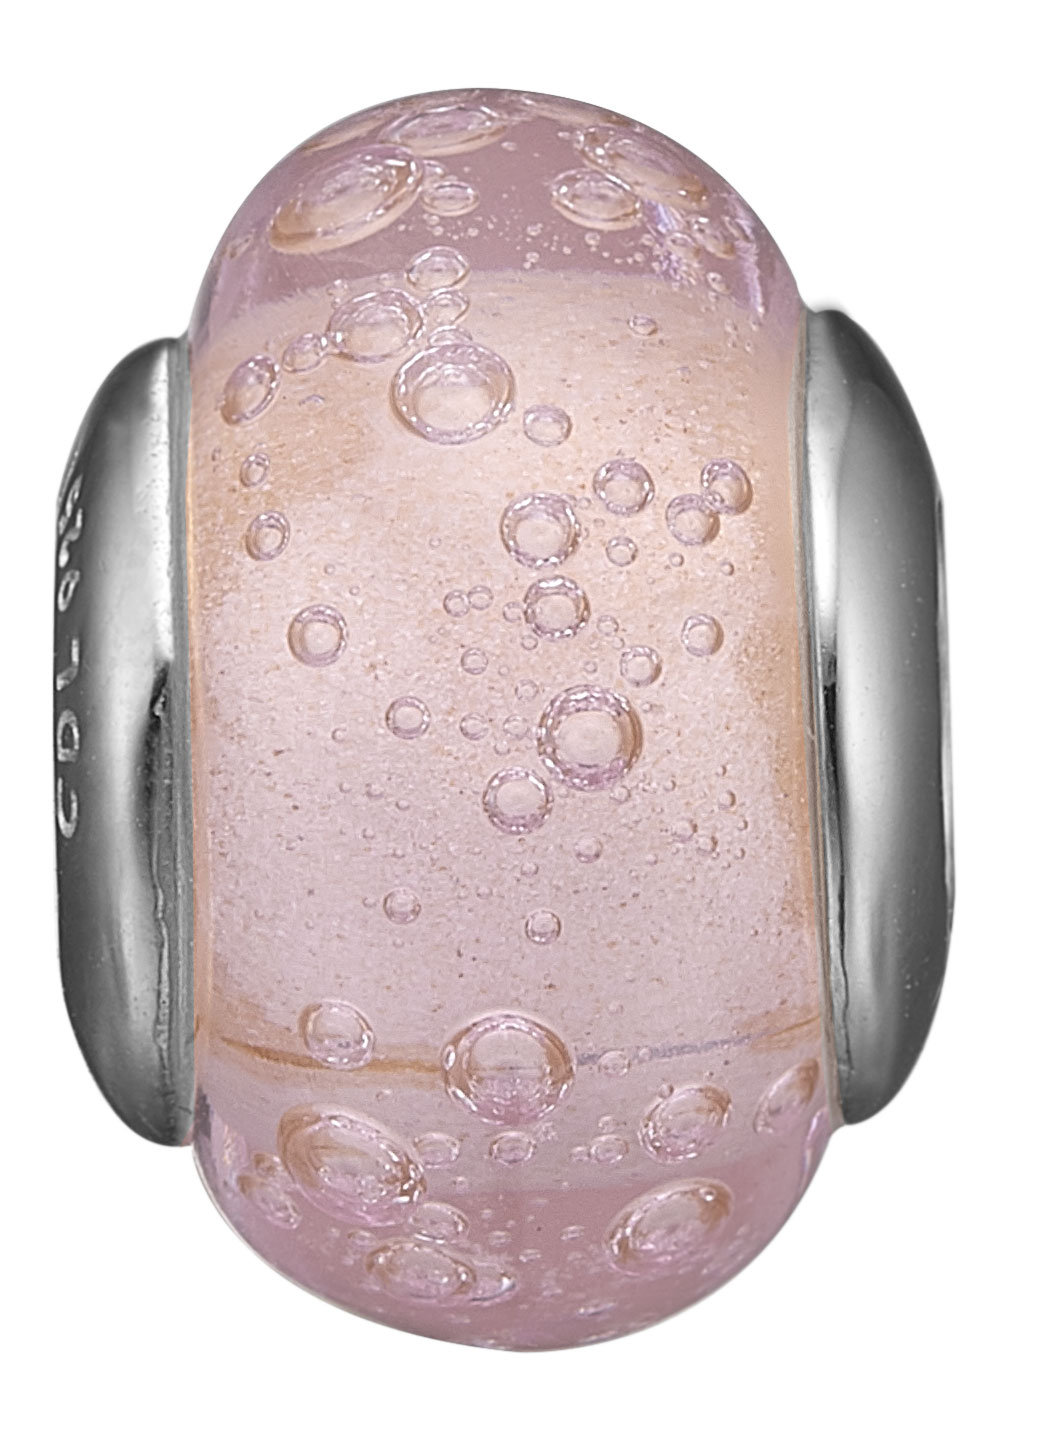 CHRISTINA Bubbly Pink Globe - 623-S172